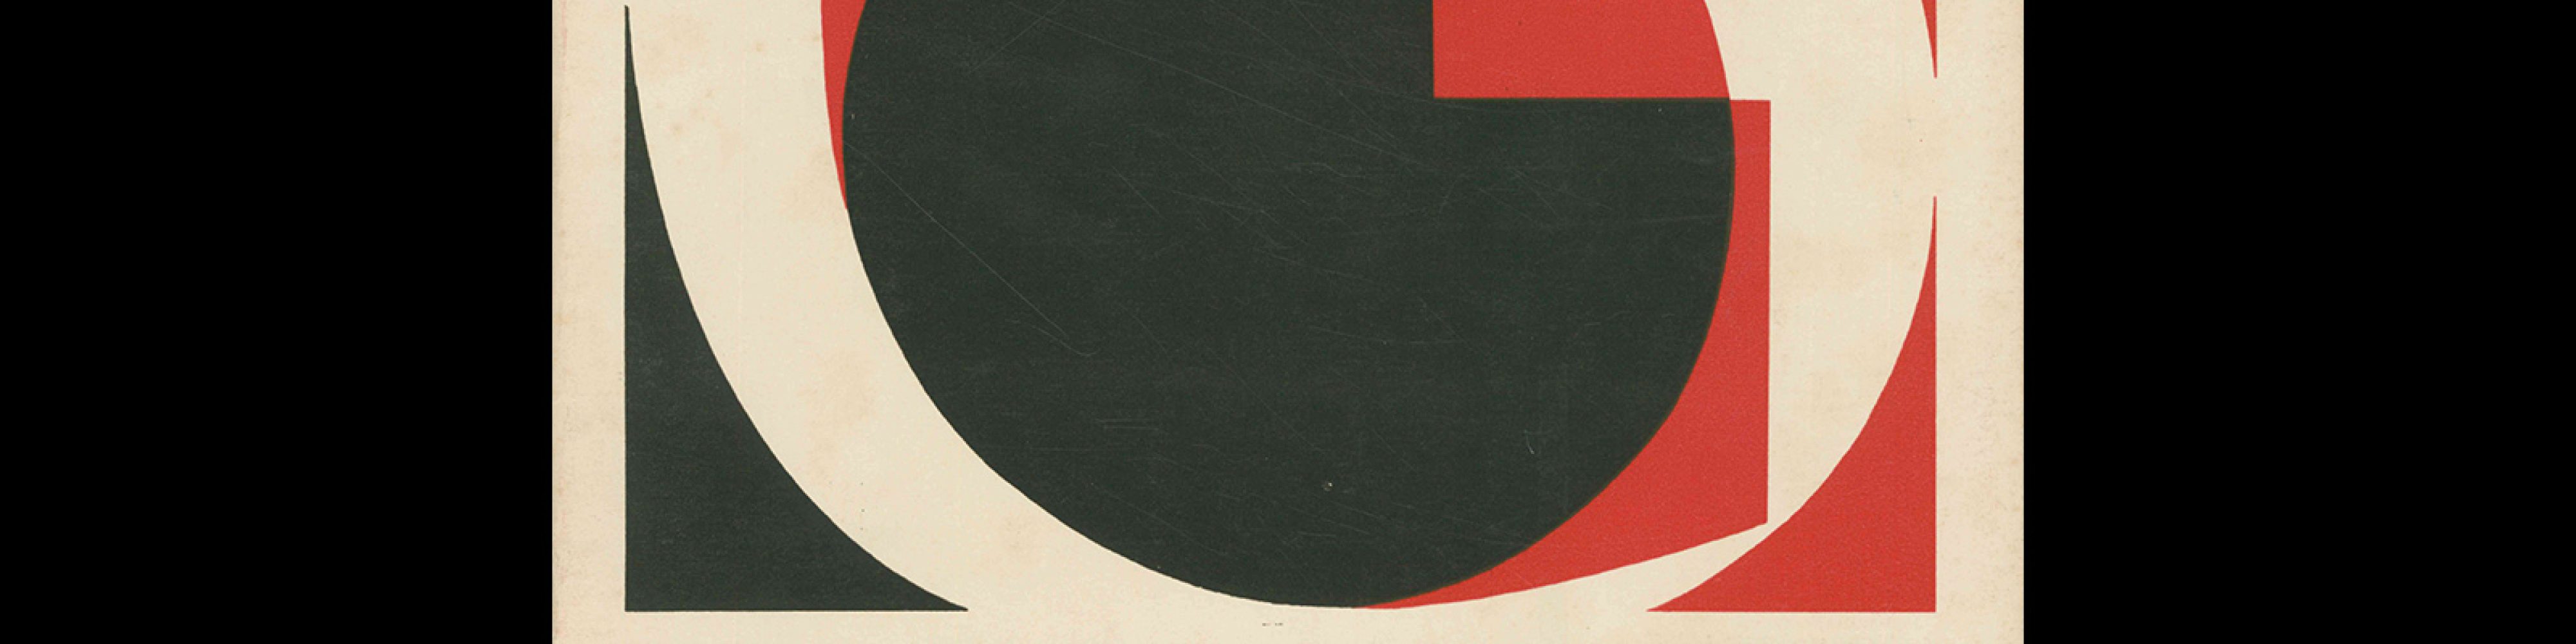 Typografia, ročník 68, 06, 1965. Cover design by Bohuslav Blažej.